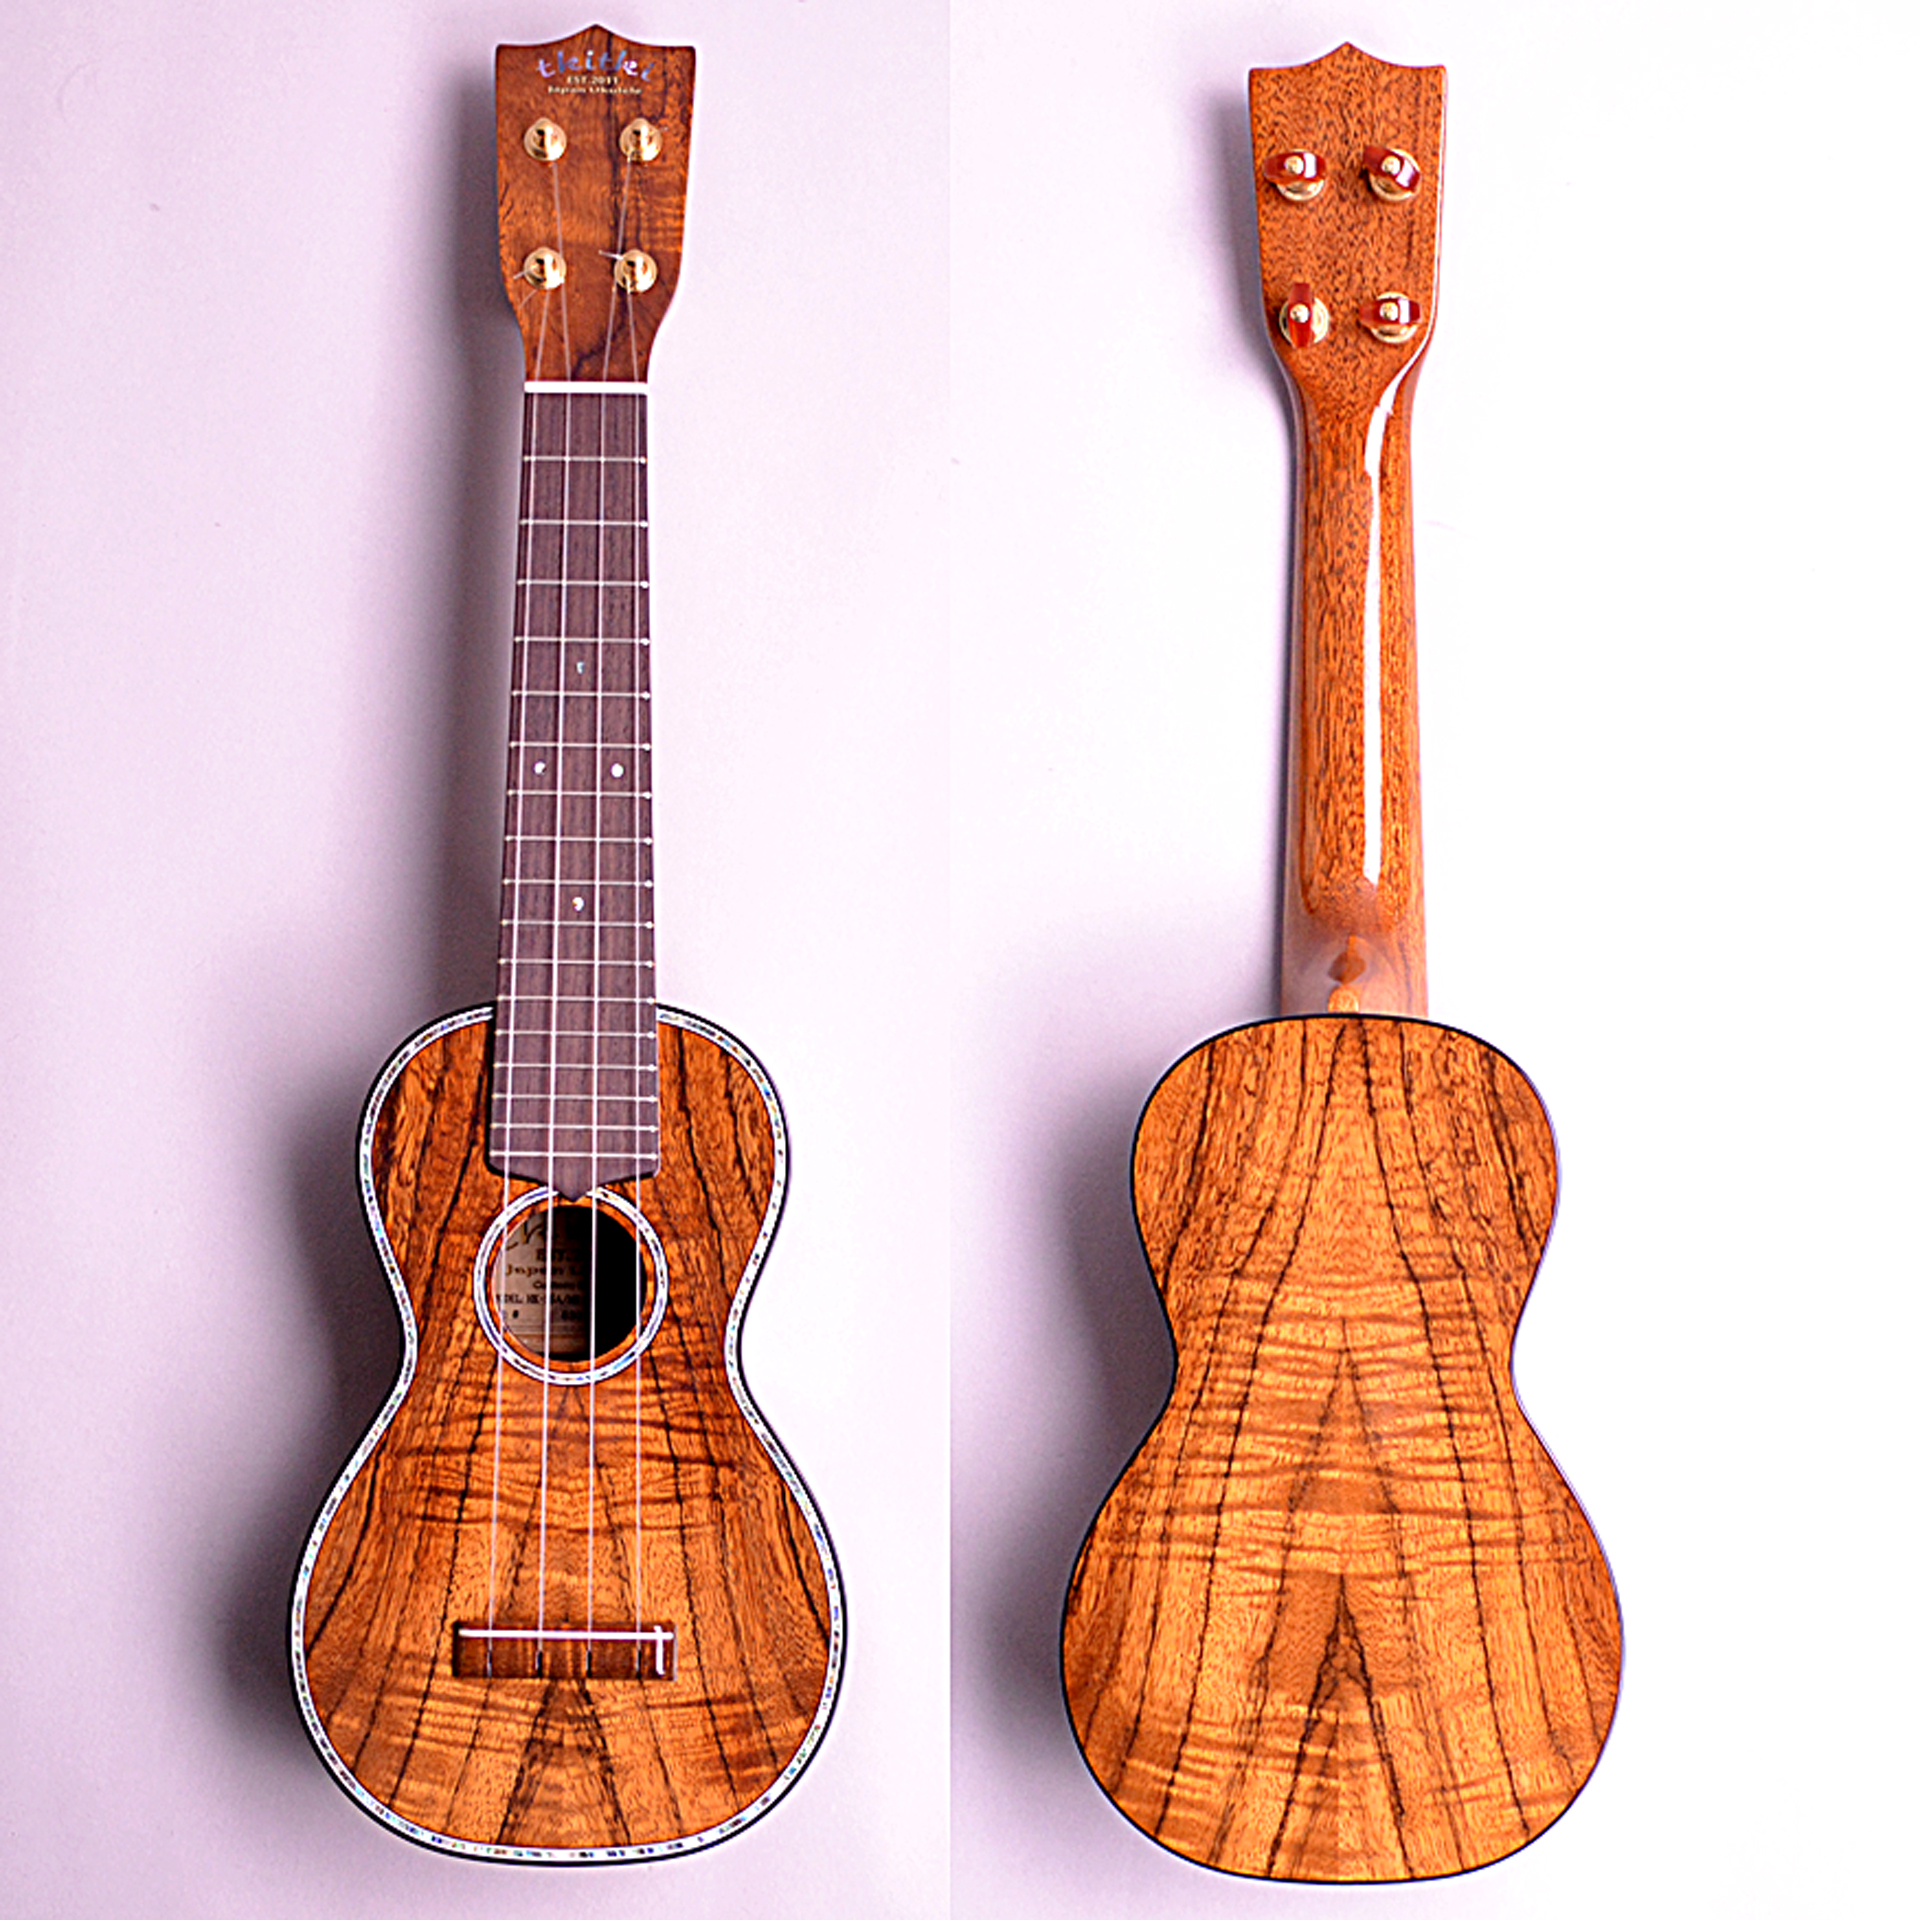 ウクレレ】tkitki ukulele 松本店オーダー エリア限定モデル『HK-S5A 